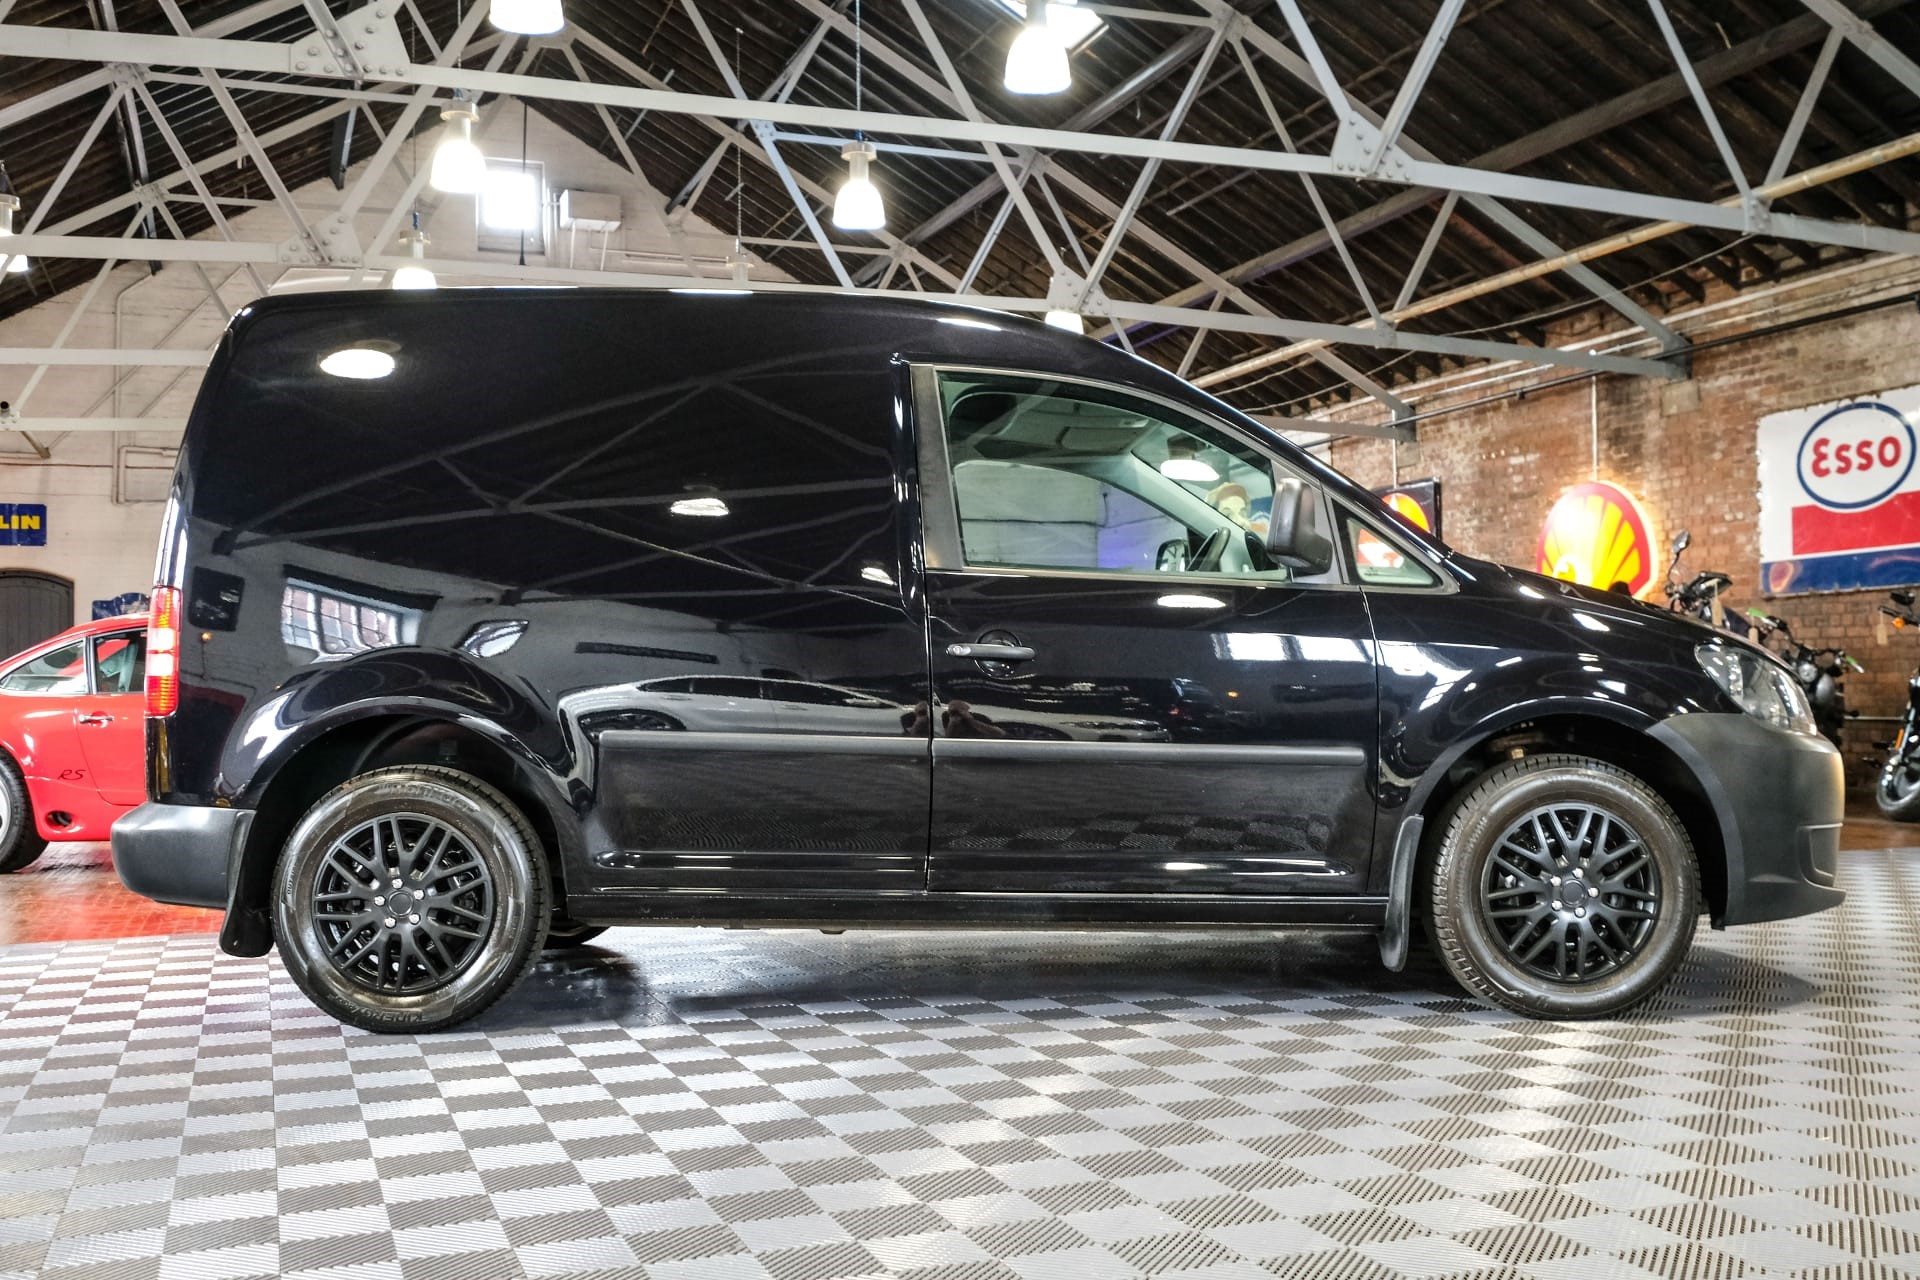 Used 2015 Volkswagen Caddy C20 Tdi Black Edition Bluemotion Panel Van 1.6  Manual Diesel For Sale in Norfolk